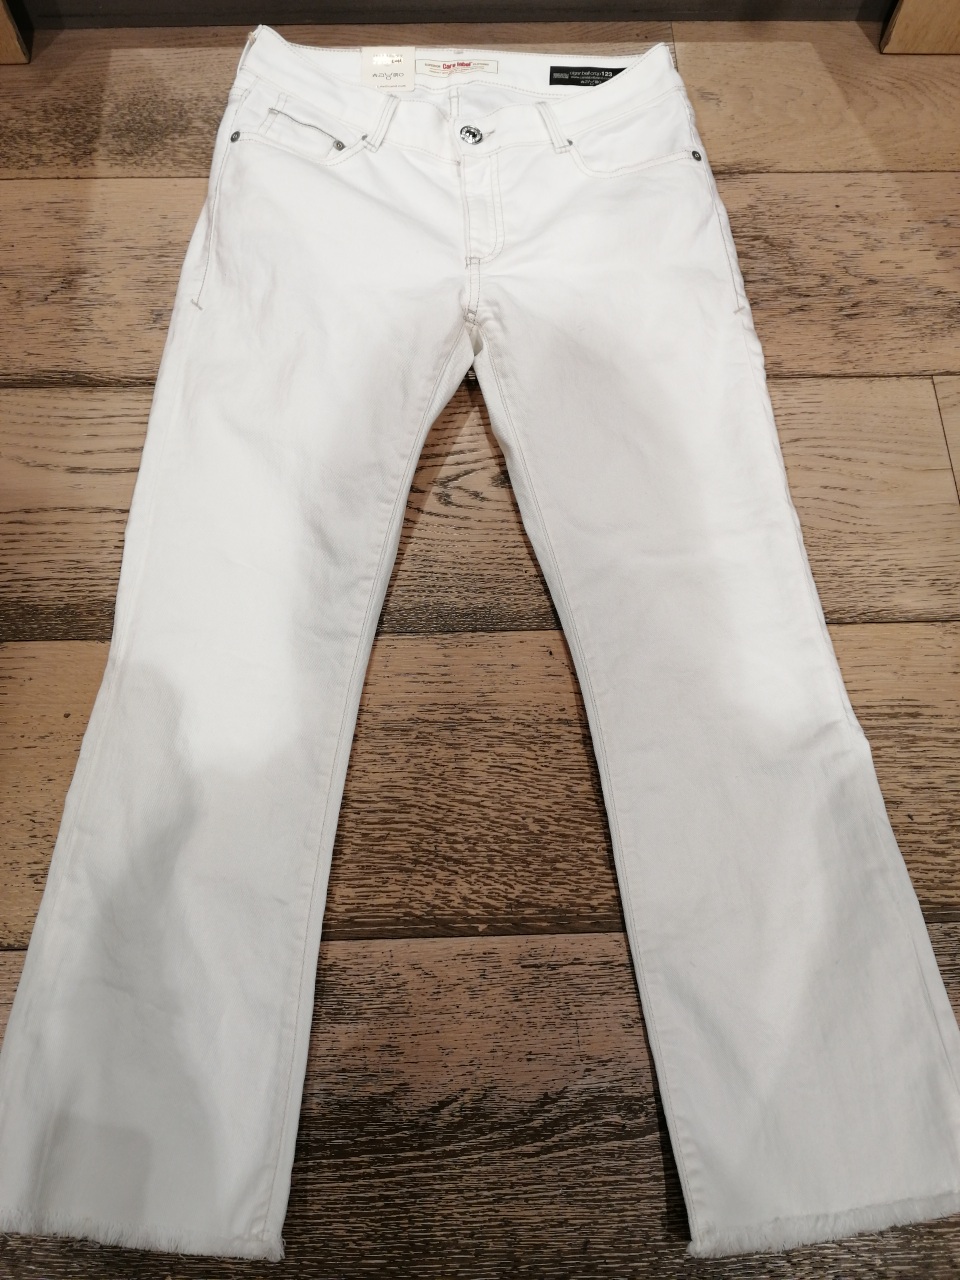 Jeans CARE LABEL cotone stretch leggermente corto trombetta sfrangiatino